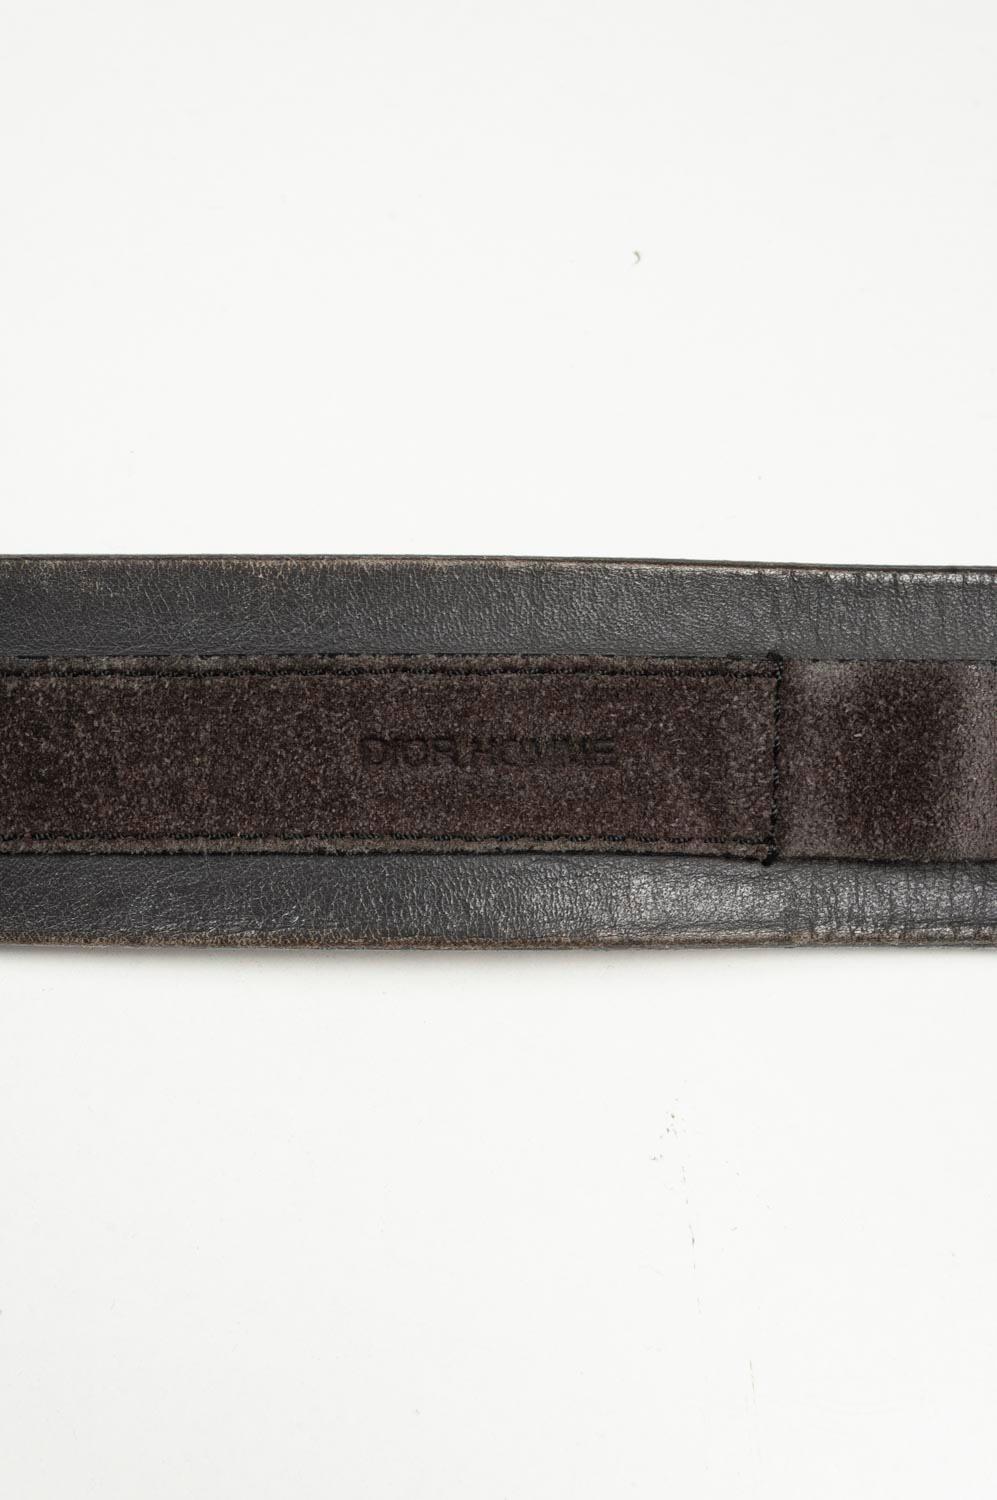 Dior Homme Men Leather Belt Size 90 (Medium) S534 For Sale 4